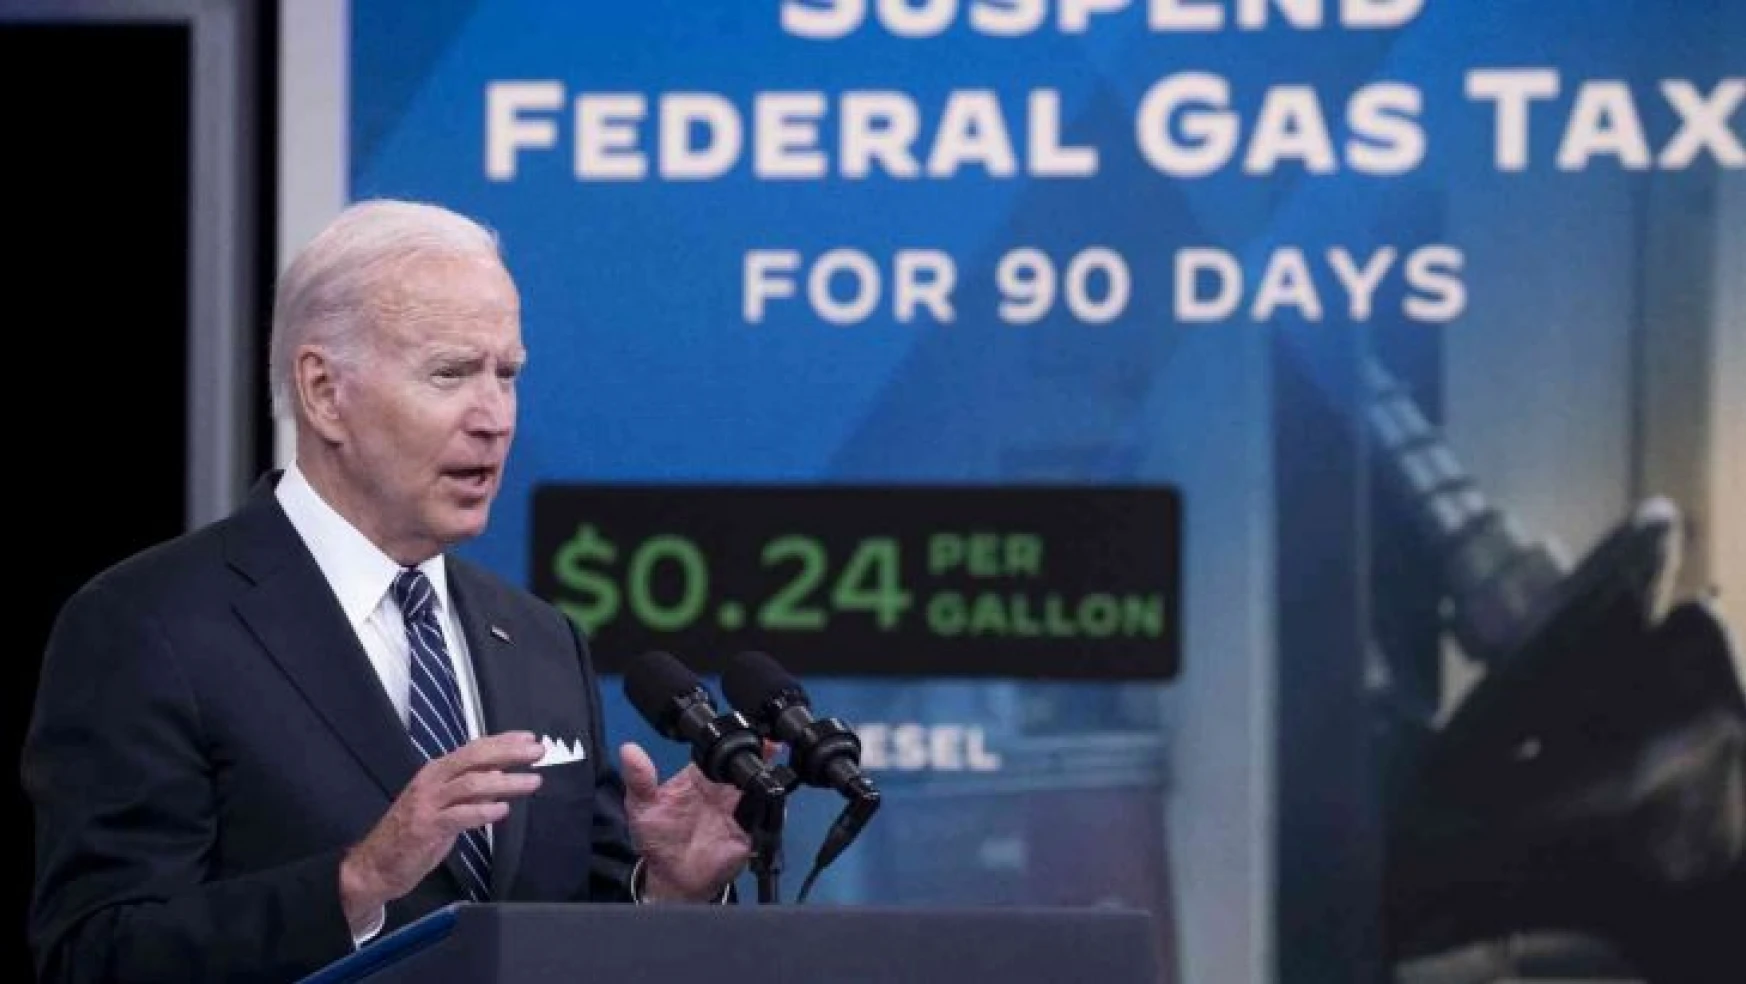 Biden'dan Kongre'ye benzinde 3 ay federal vergi muafiyeti çağrısı